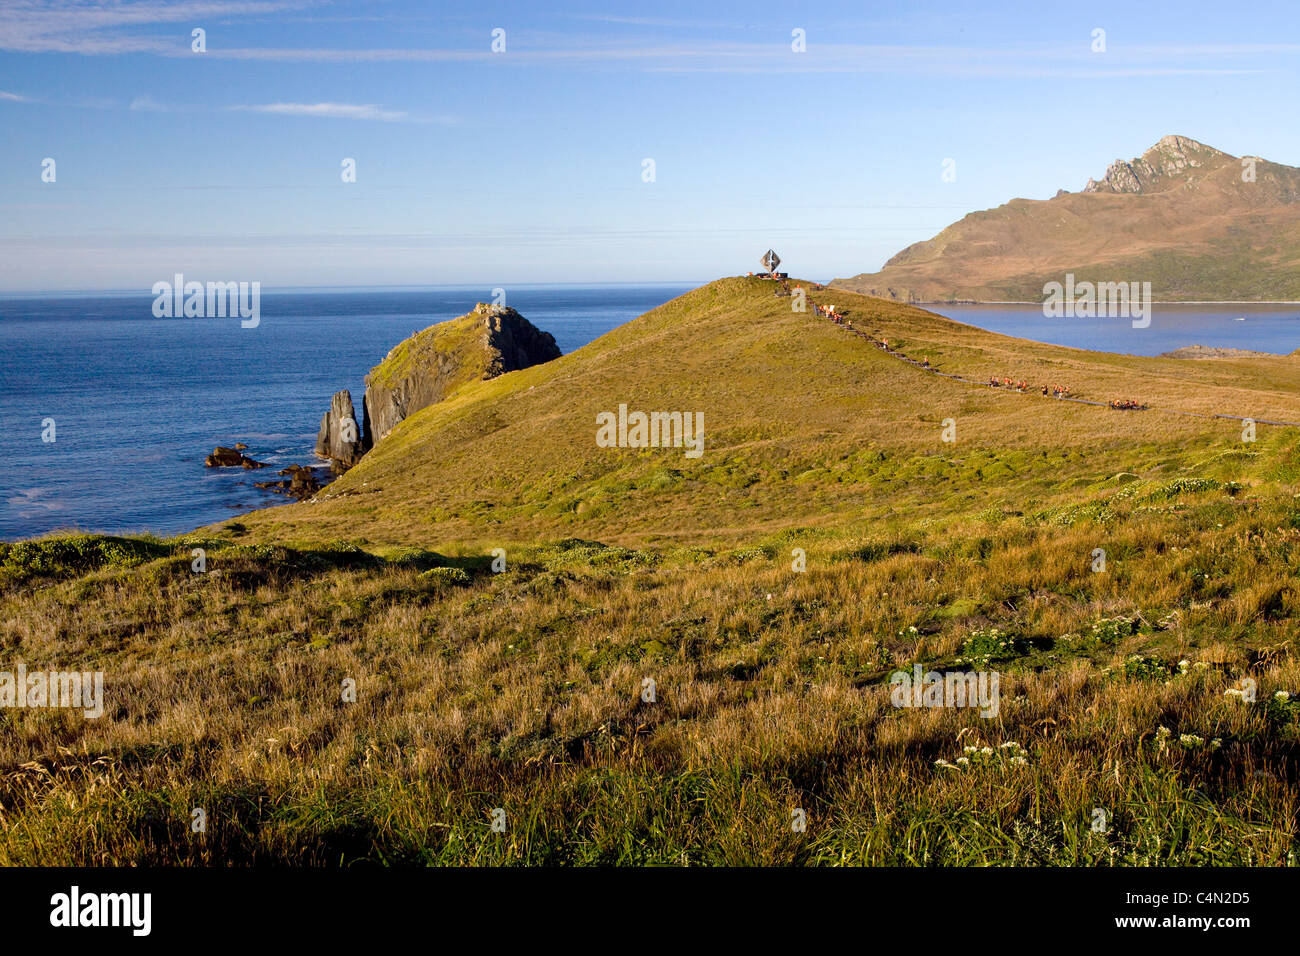 Una vista di Capo Horn, il punto più australe del Sud America, da terra. Foto Stock